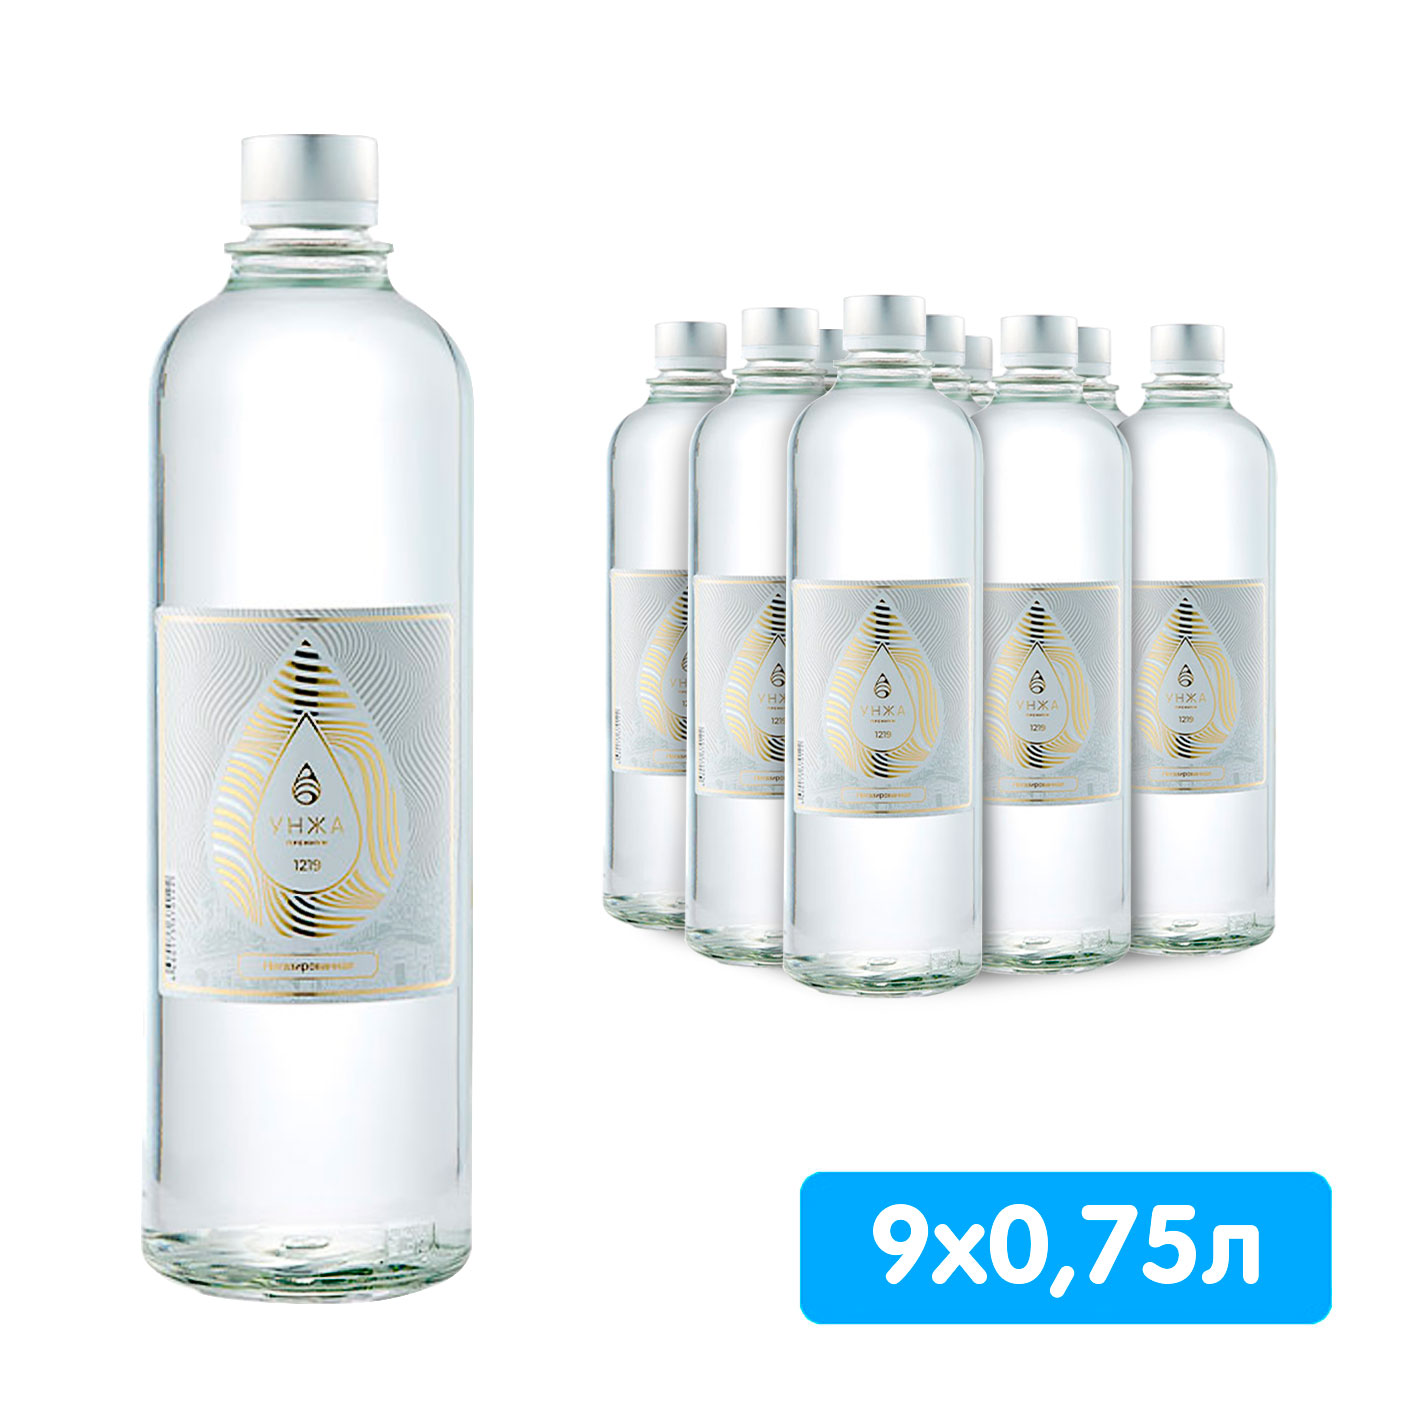 Вода Унжа Премиум 0,75 литра, без газа, стекло, 9 шт. в уп